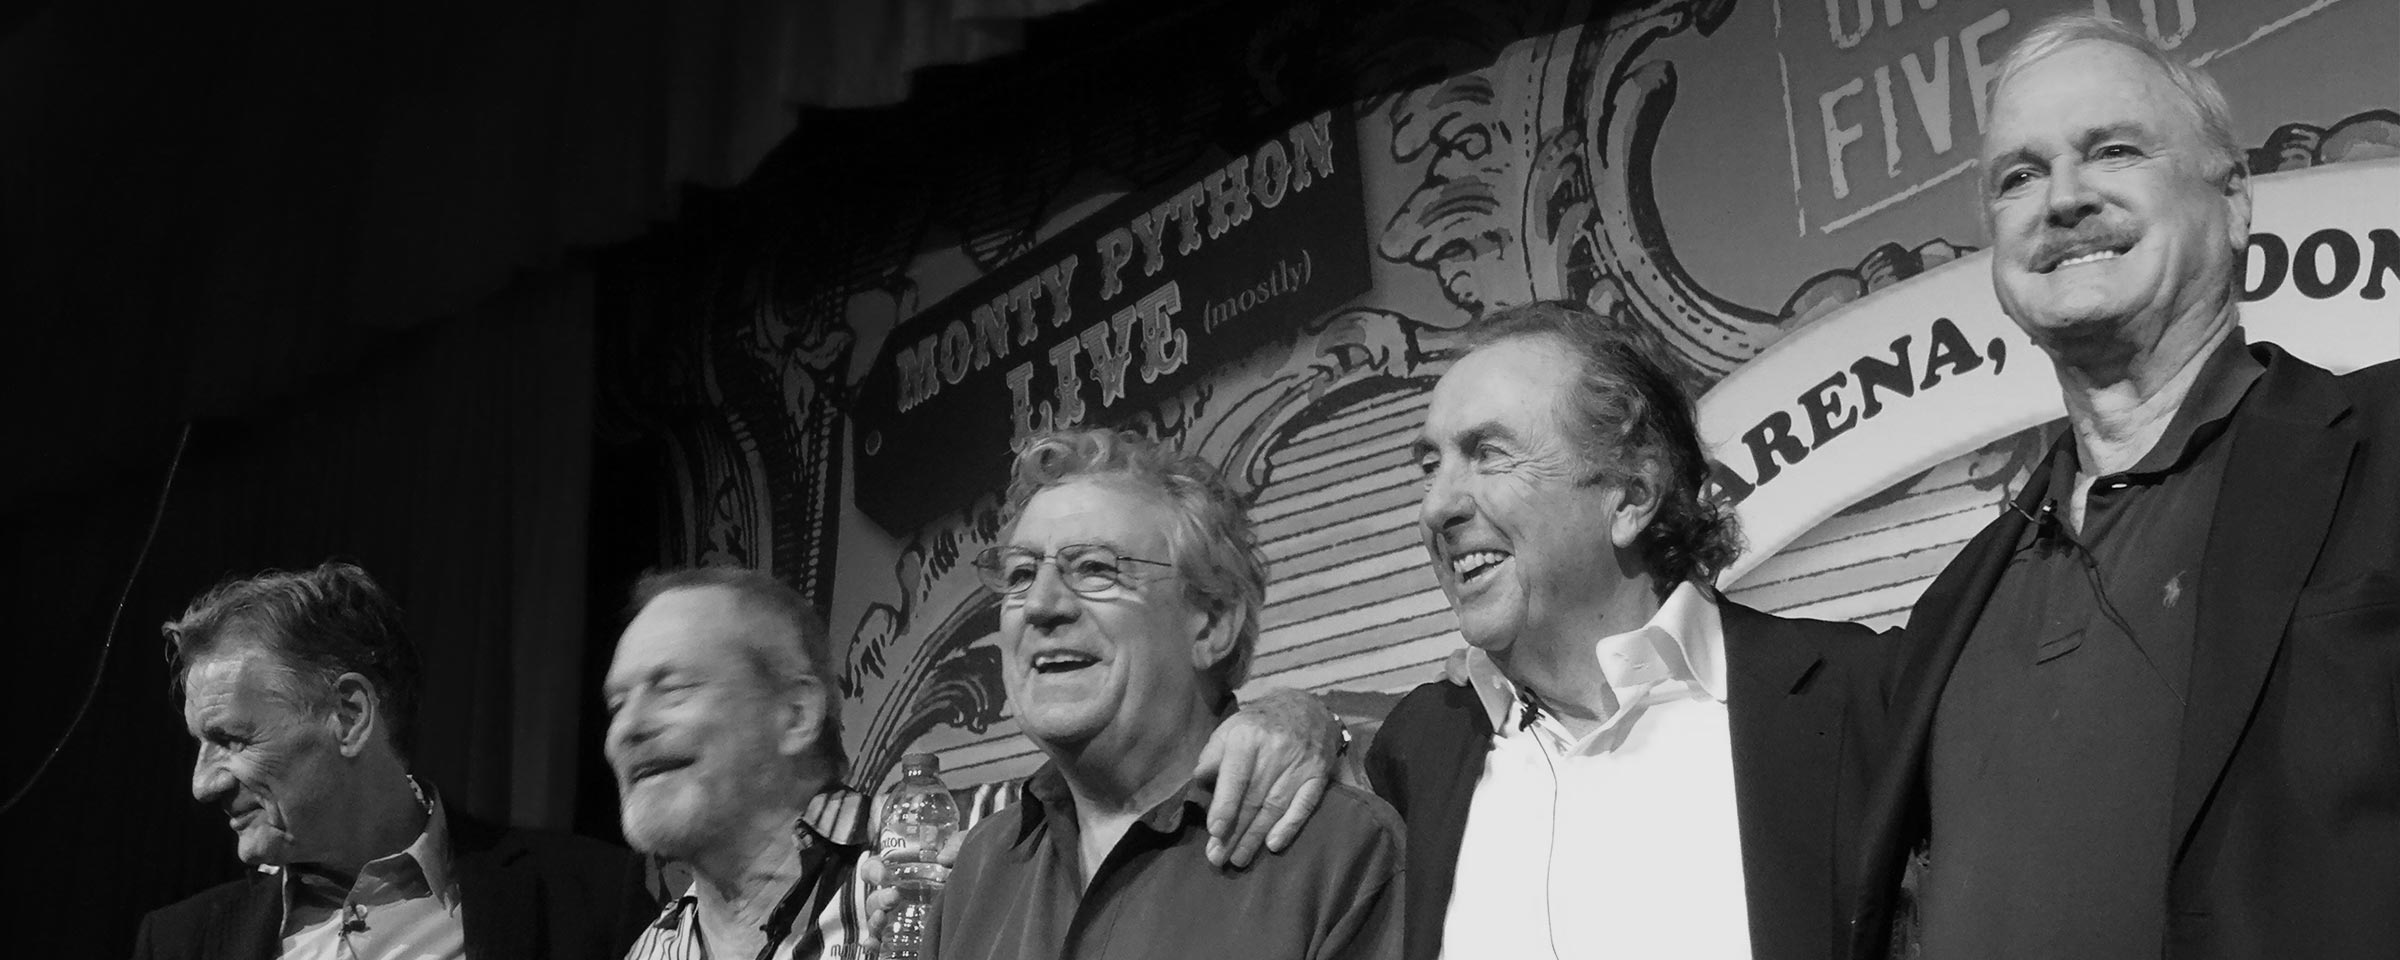 Fotografie der britischen Komikergruppe Monty Python